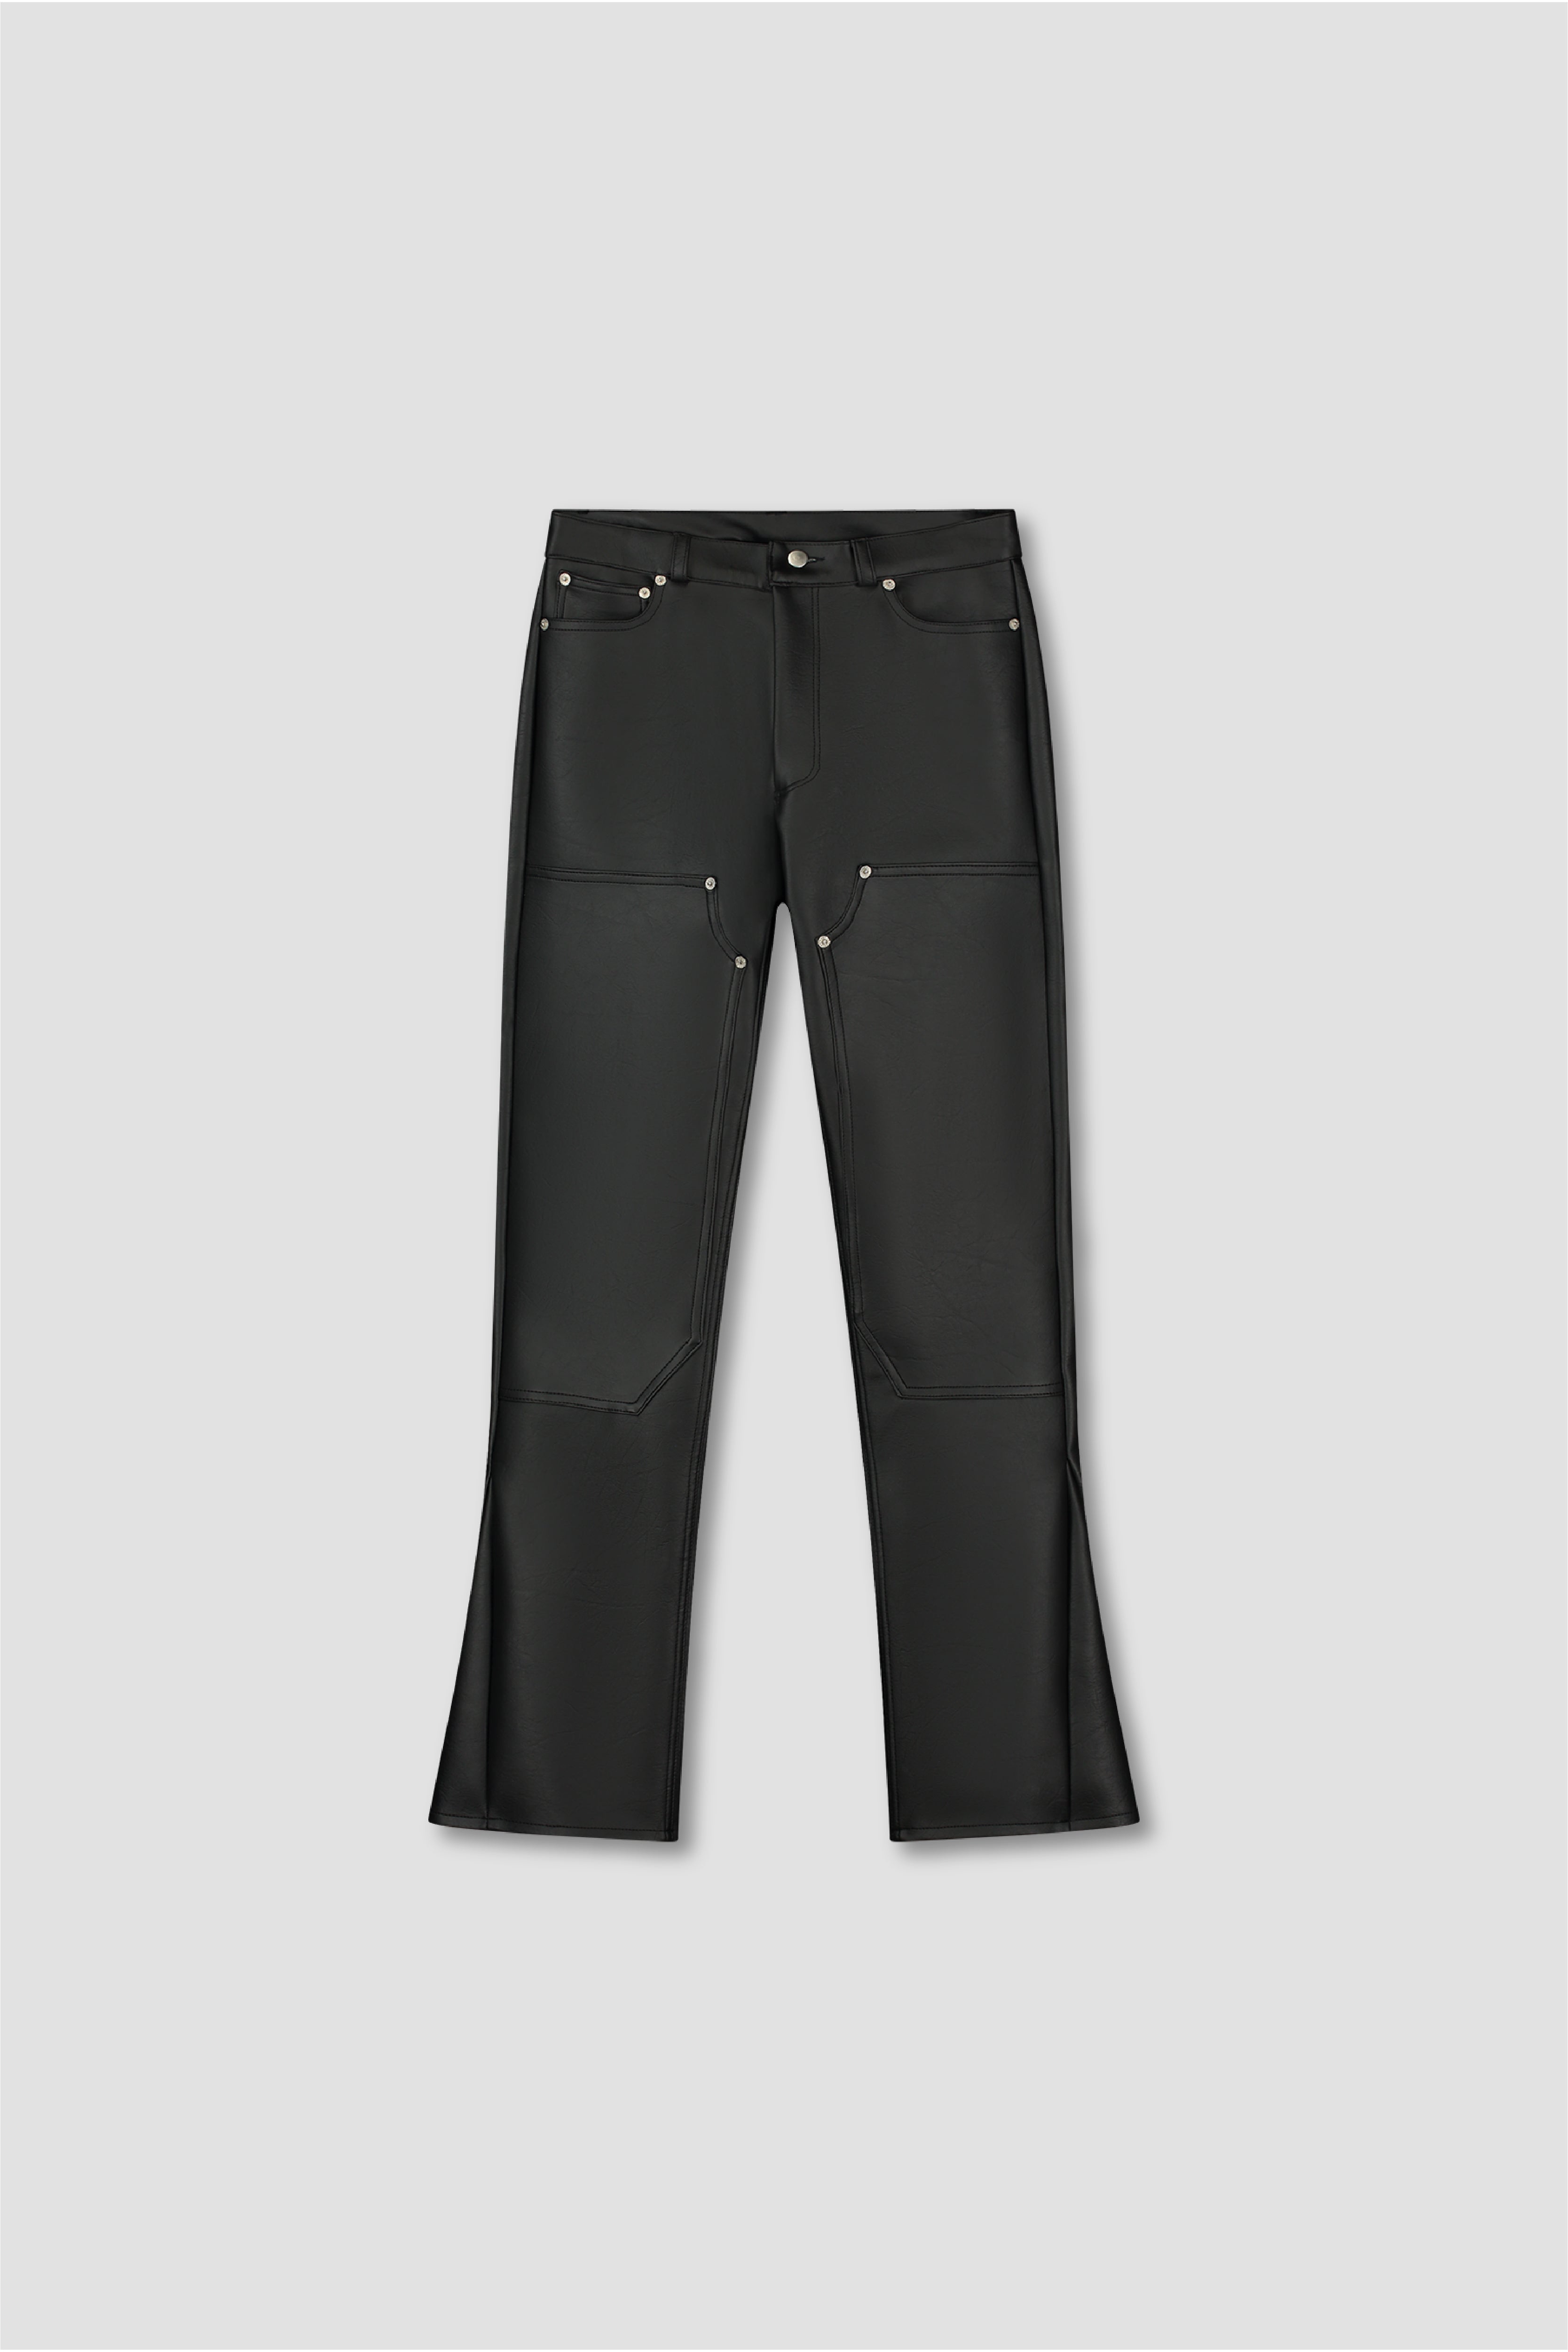 FAUX LEATHER FLARED CARPENTER PANTS - BLACK – Novateur Clothing